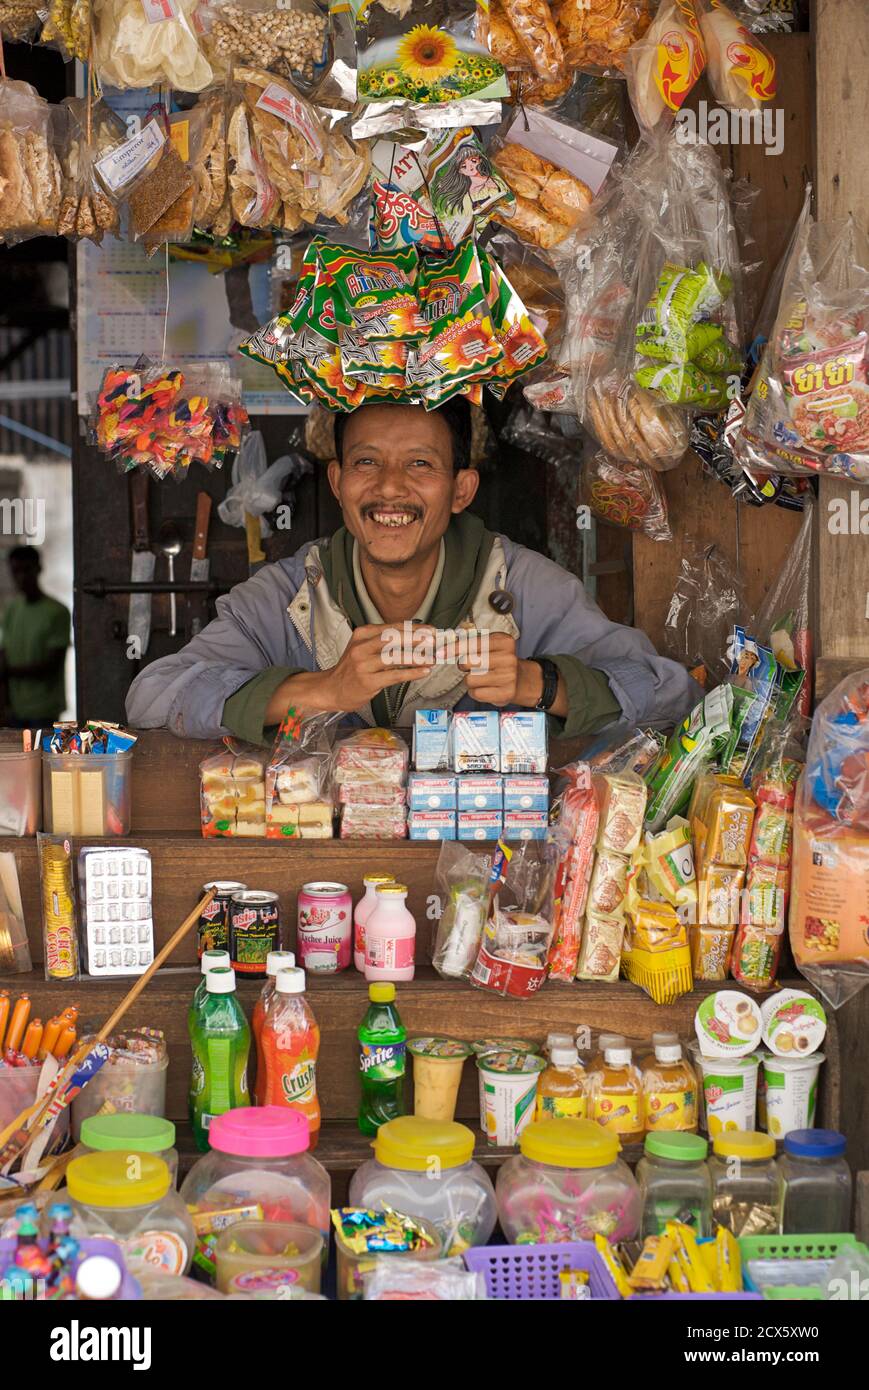 Amistoso comerciante birmano con sus mercancías, Kalaw, Birmania. Myanmar Foto de stock